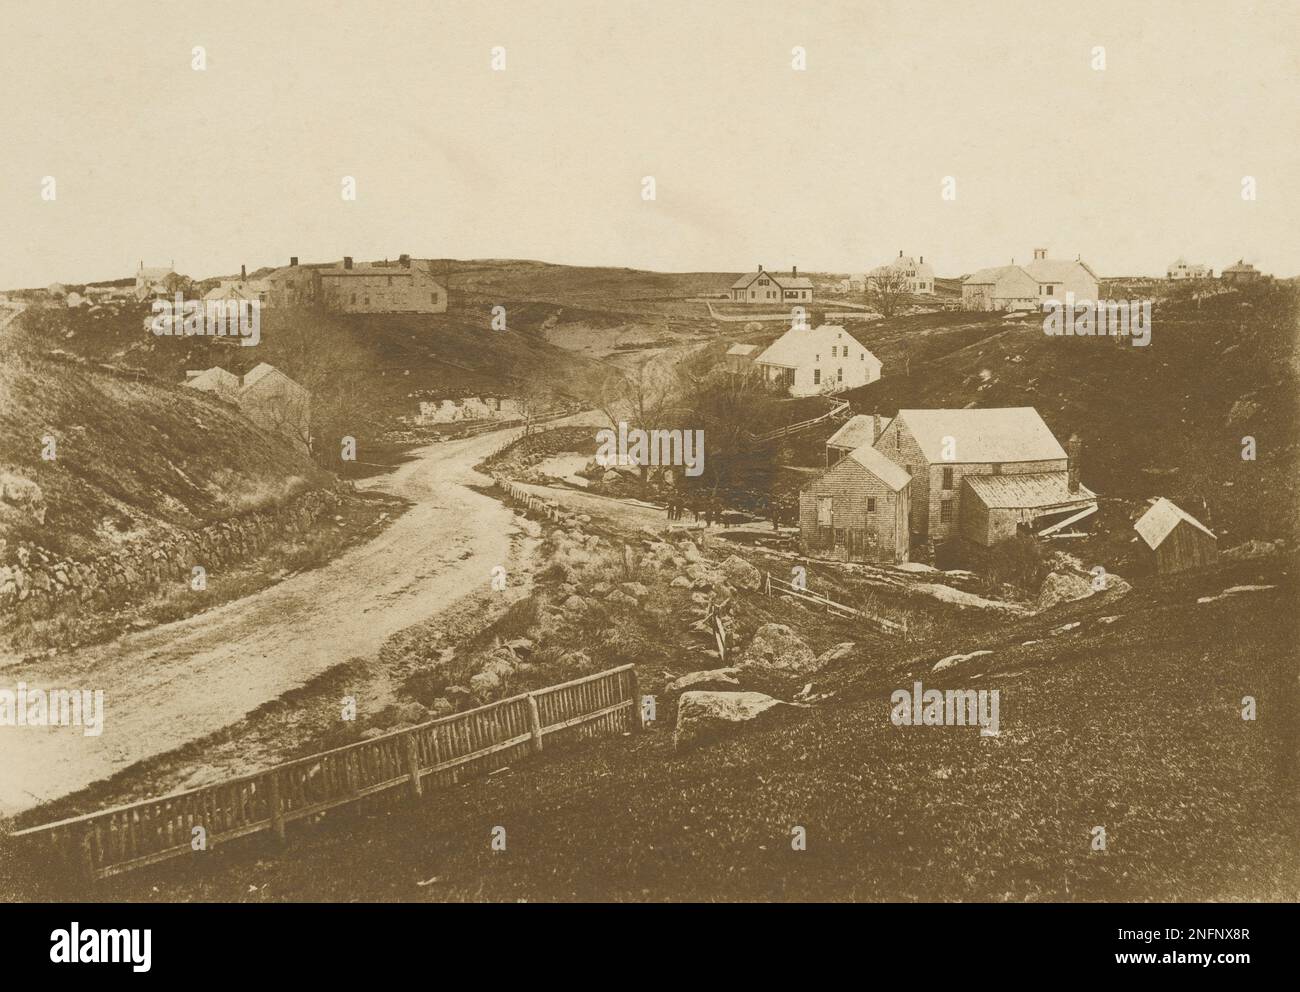 Fotografia antica c1880, che mostra il sito di Stony Brook Mill. A destra della strada si trova il lanificio e la conceria. Al centro a sinistra della strada, che si erge sopra la bassa collina, si trova la casa dei Perry, distrutta da un incendio nel 1898. Ubicazione: Brewster, Cape Cod, Massachusetts. FONTE: FOTOGRAFIA ORIGINALE Foto Stock